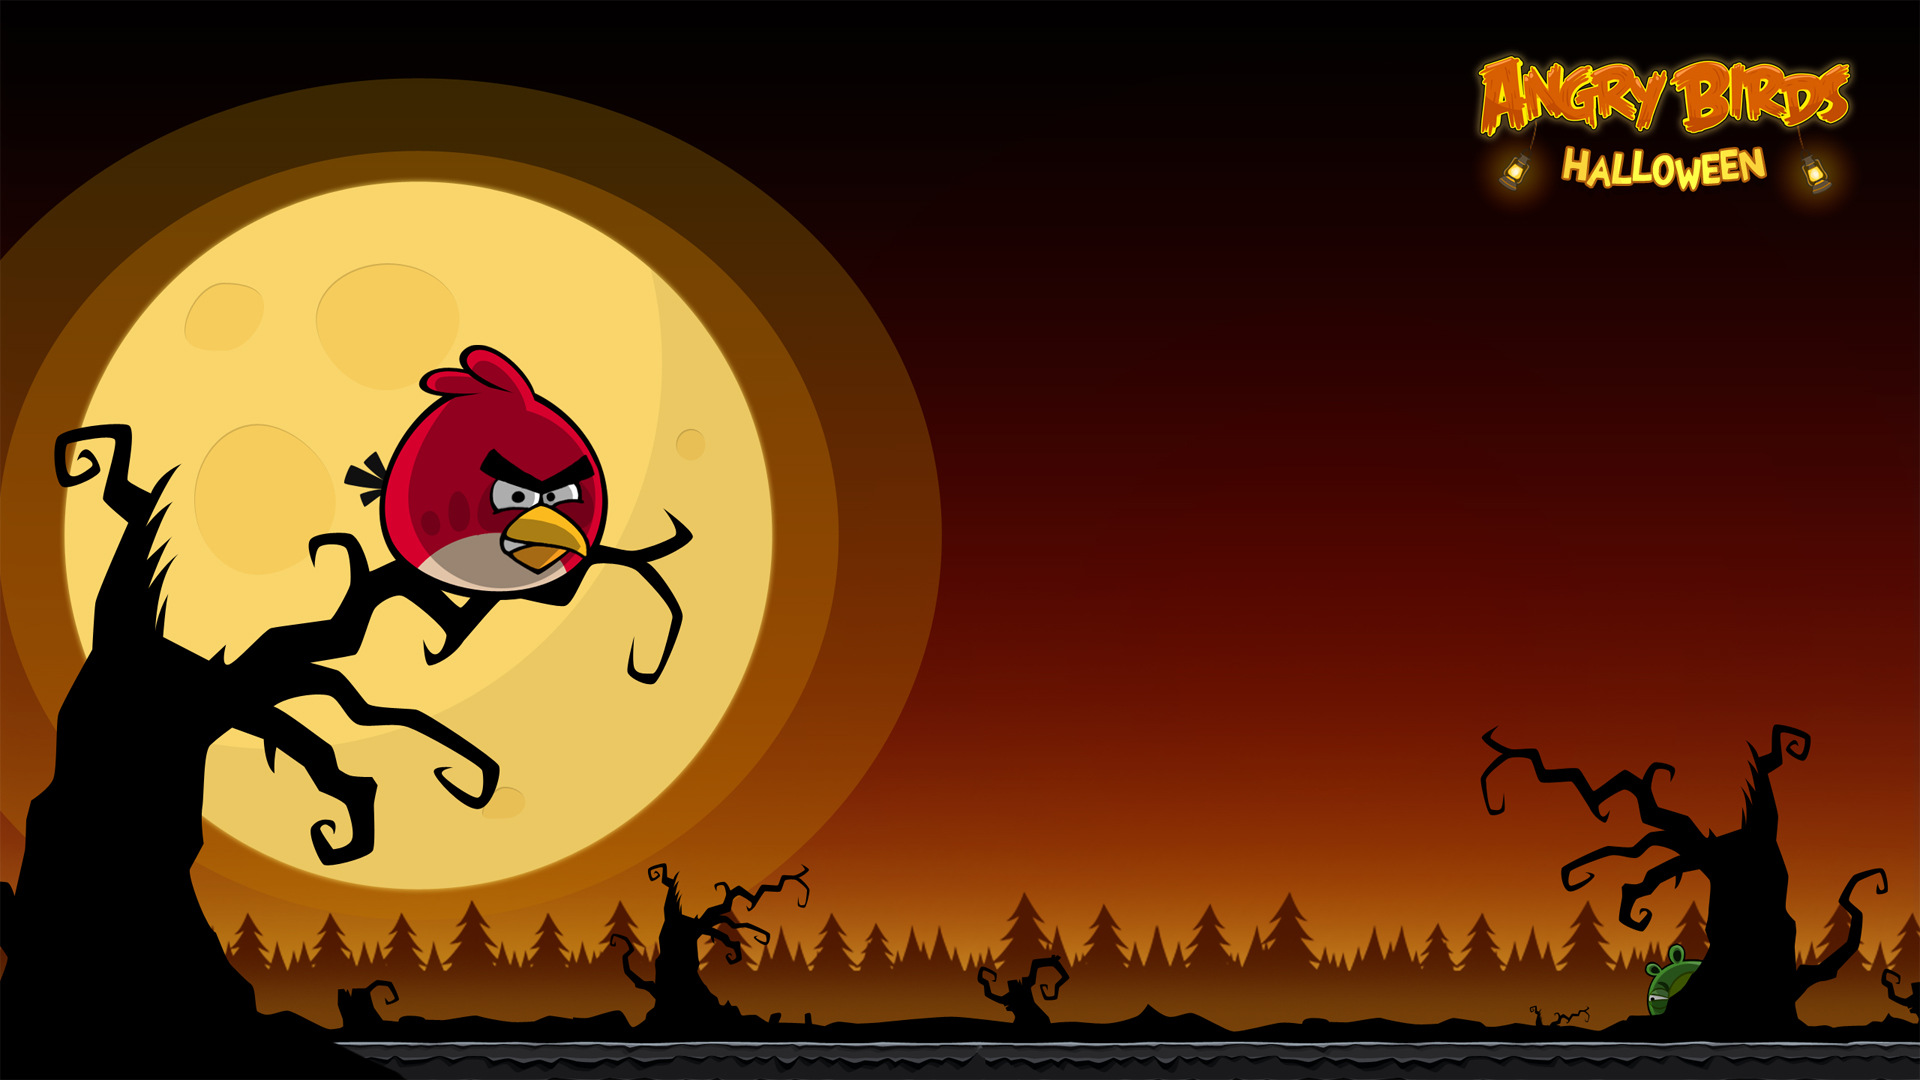 Angry Birds Halloween IPhone Desktop Backgrounds AngryBirdsNest